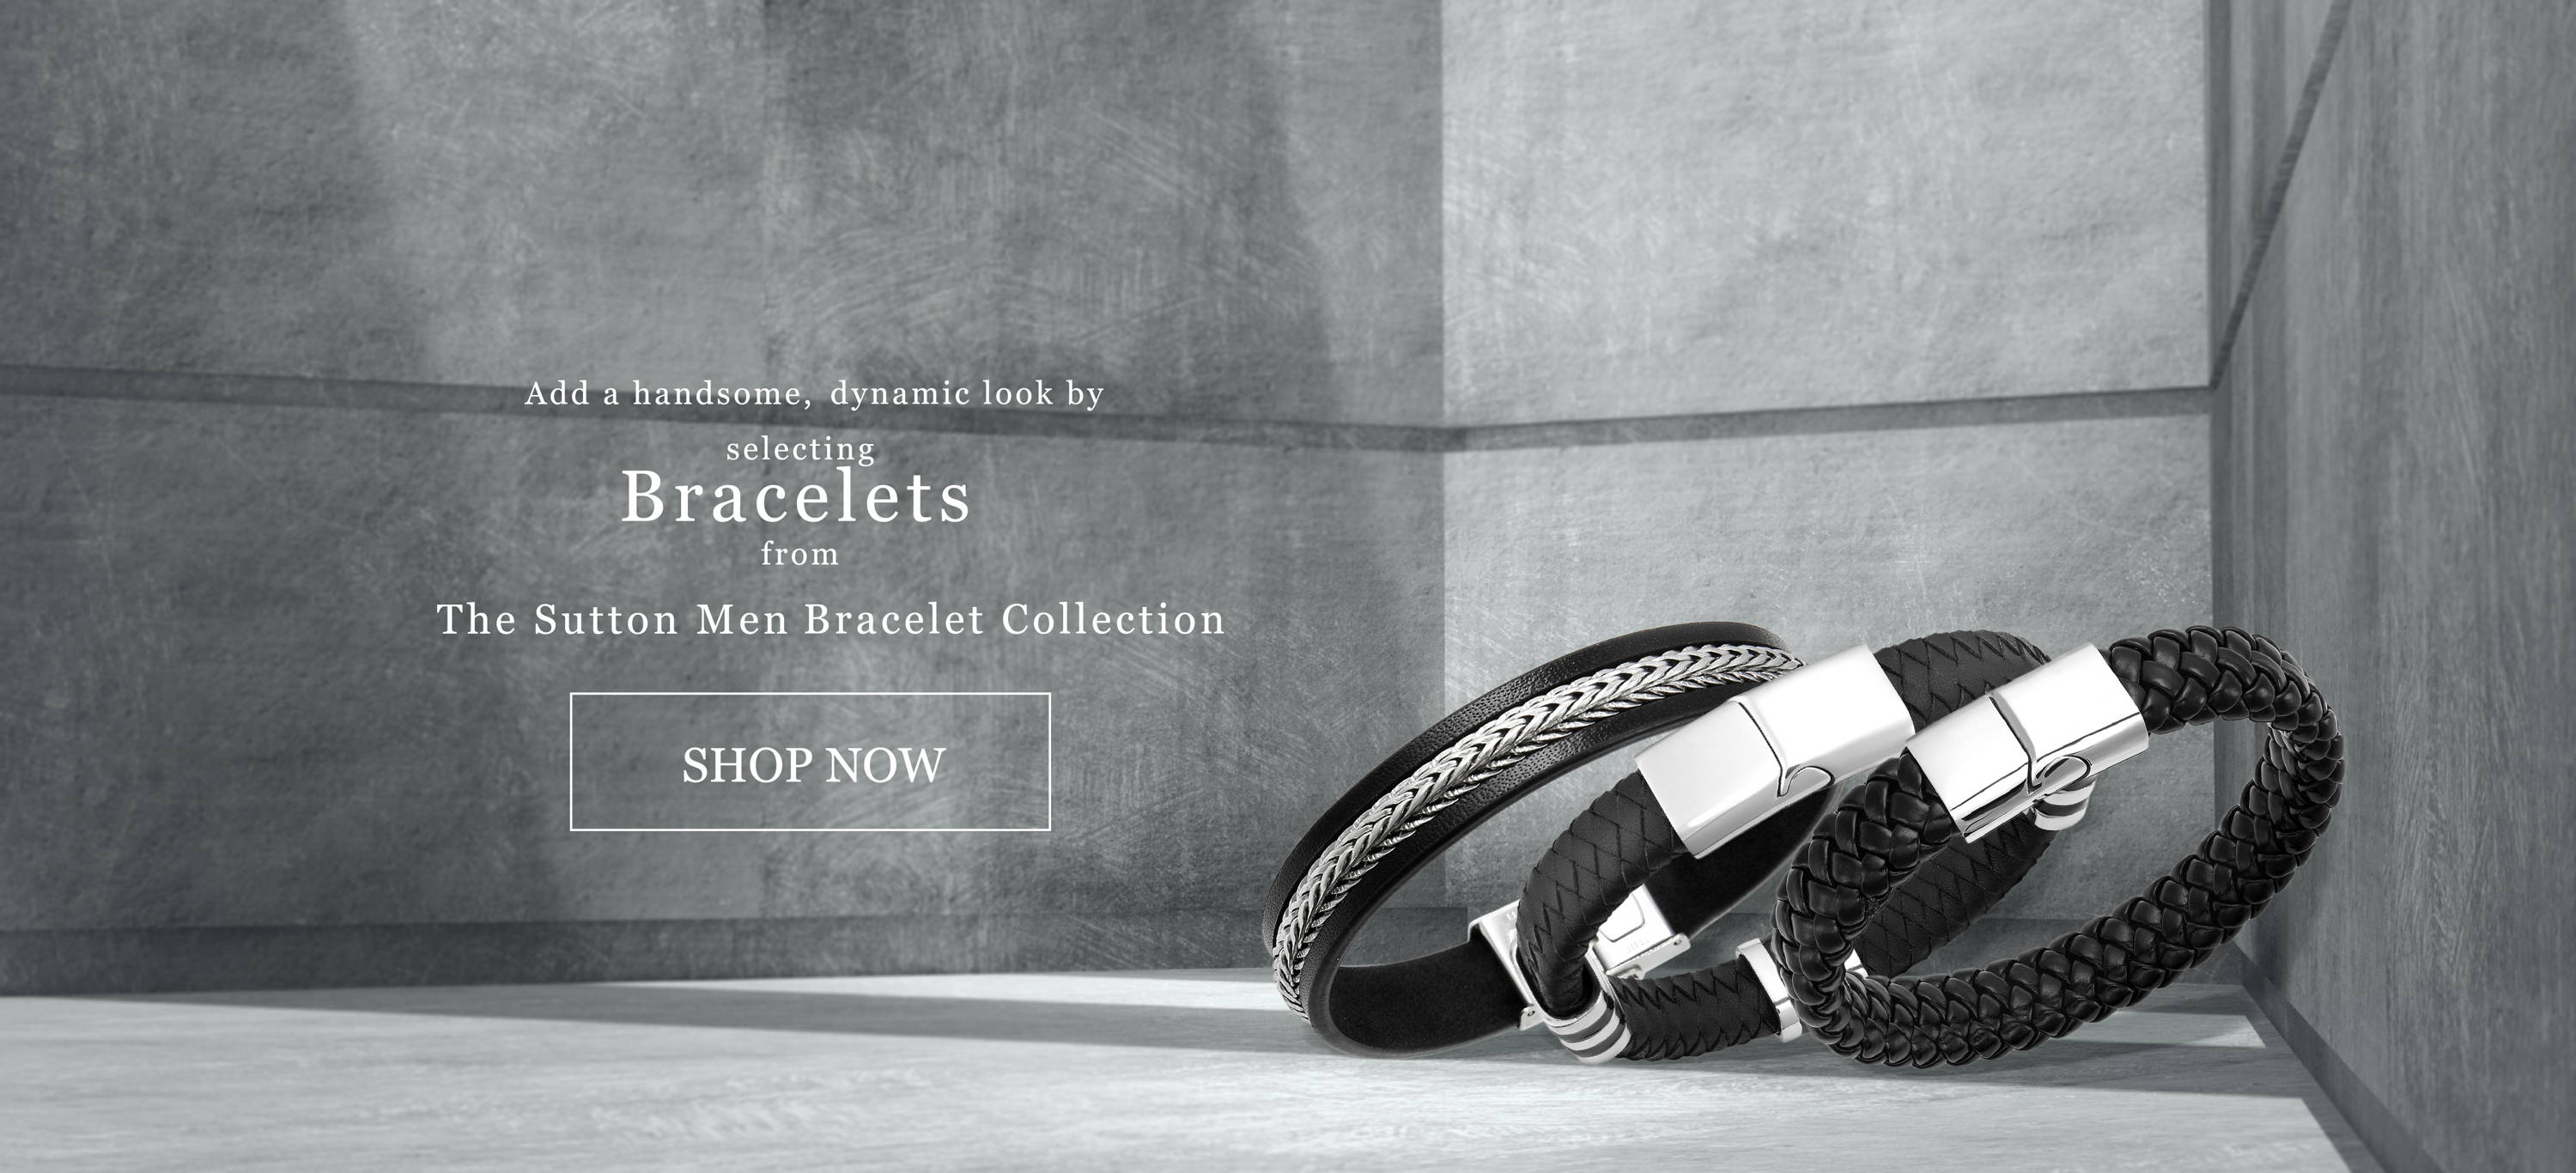 The Sutton Men Bracelet Collection